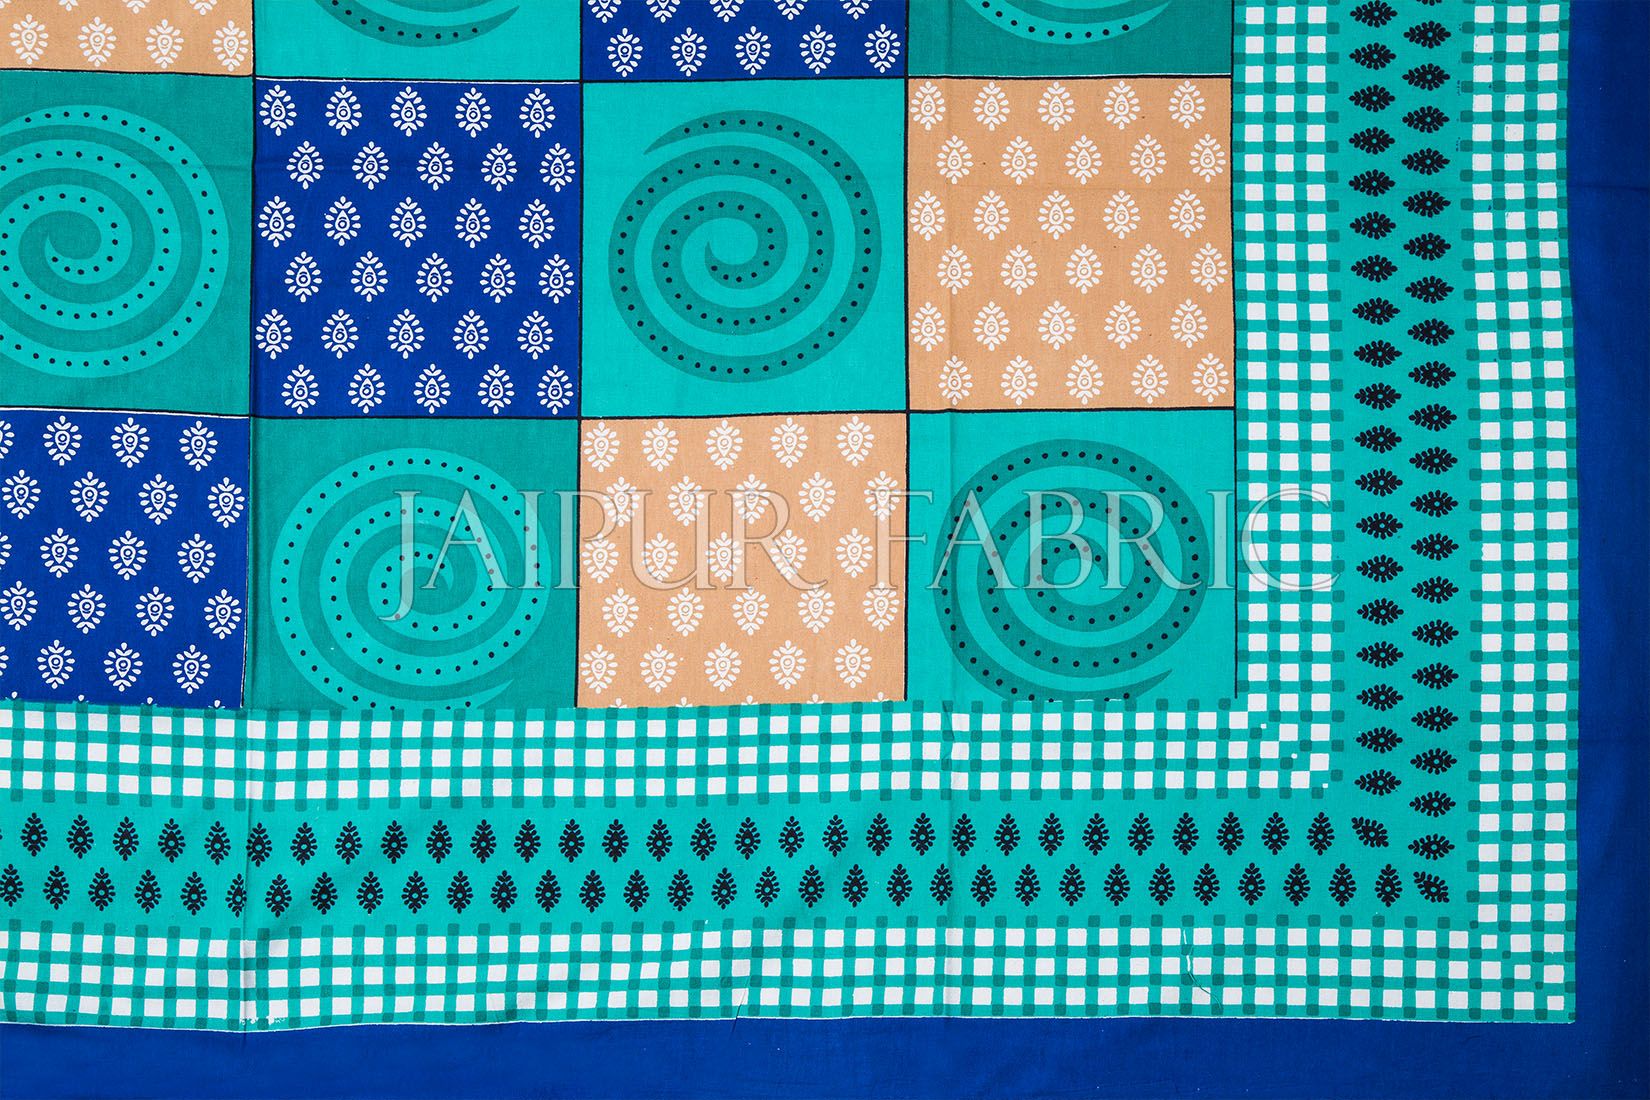 Blue Base Cyan Rangoli Print Cotton Single Bed Sheet